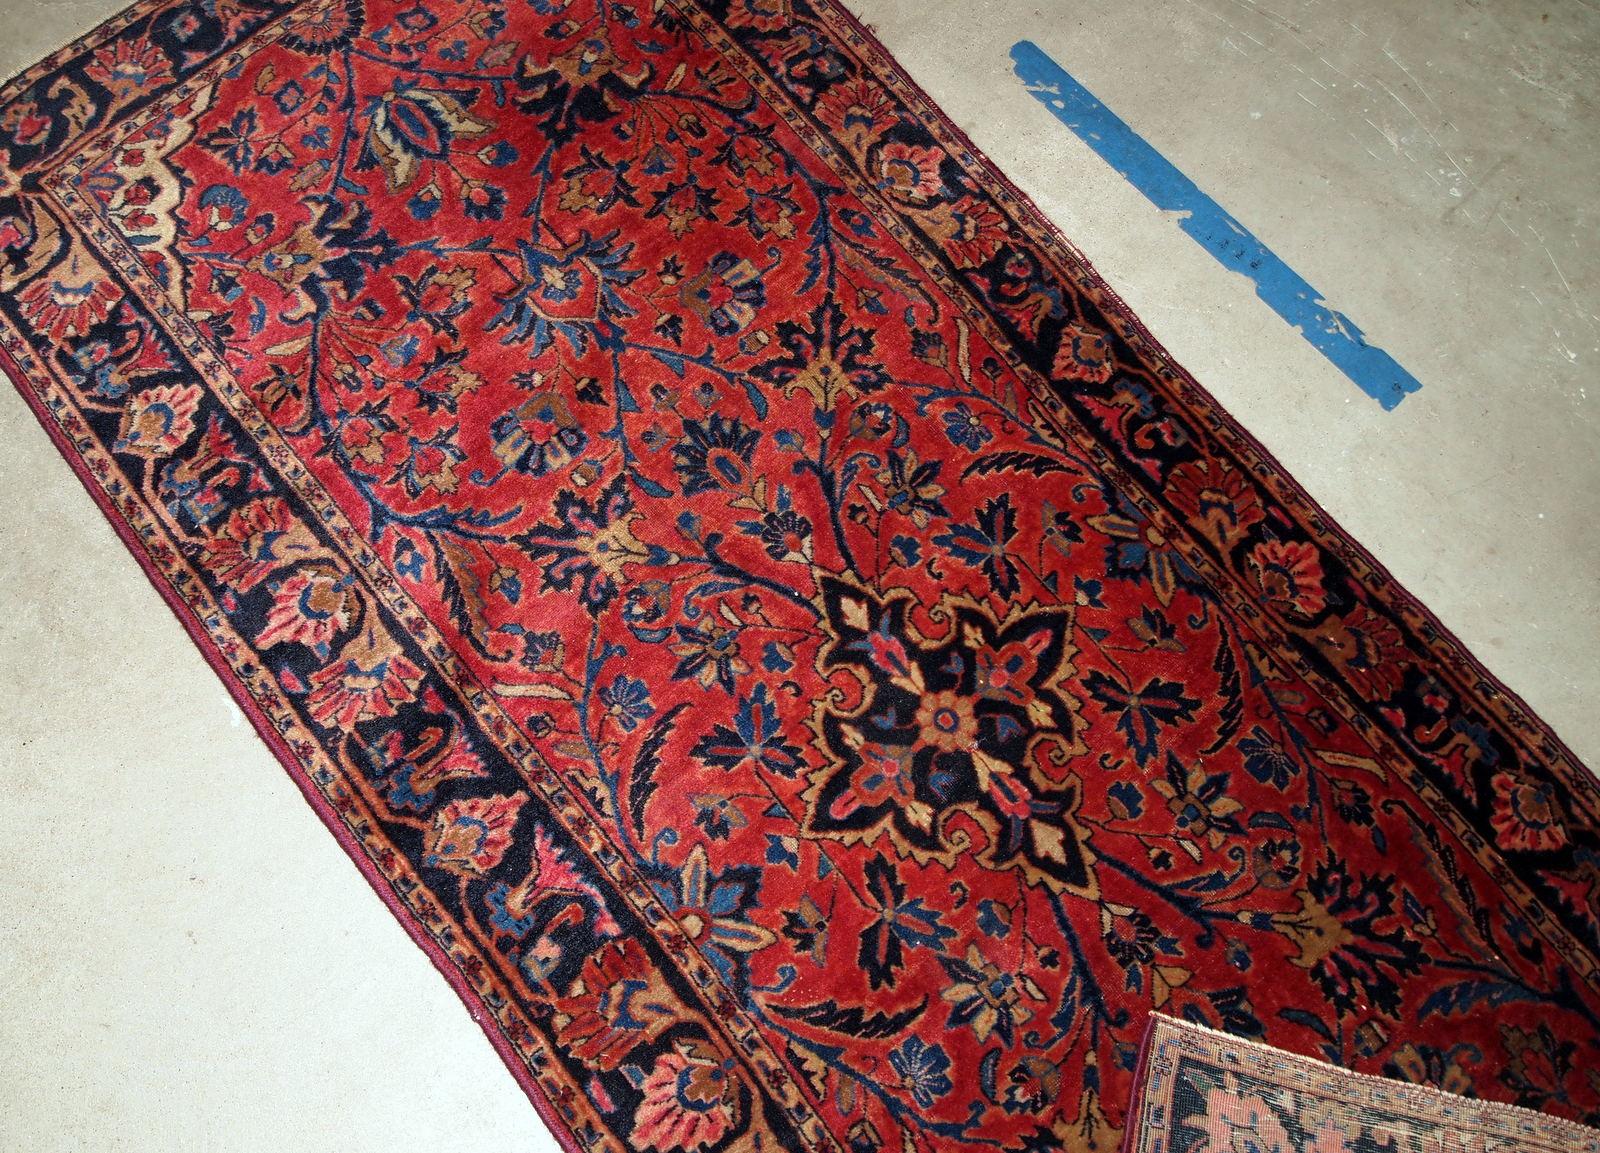 Handgefertigter antiker Kashan-Teppich vom Anfang des 20. Jahrhunderts. Dieser fein gewebte Teppich ist in gutem Originalzustand.

- Zustand: original gut,

- um 1900,

- Größe: 2,5' x 7,4' (76cm x 225cm),

-Material: